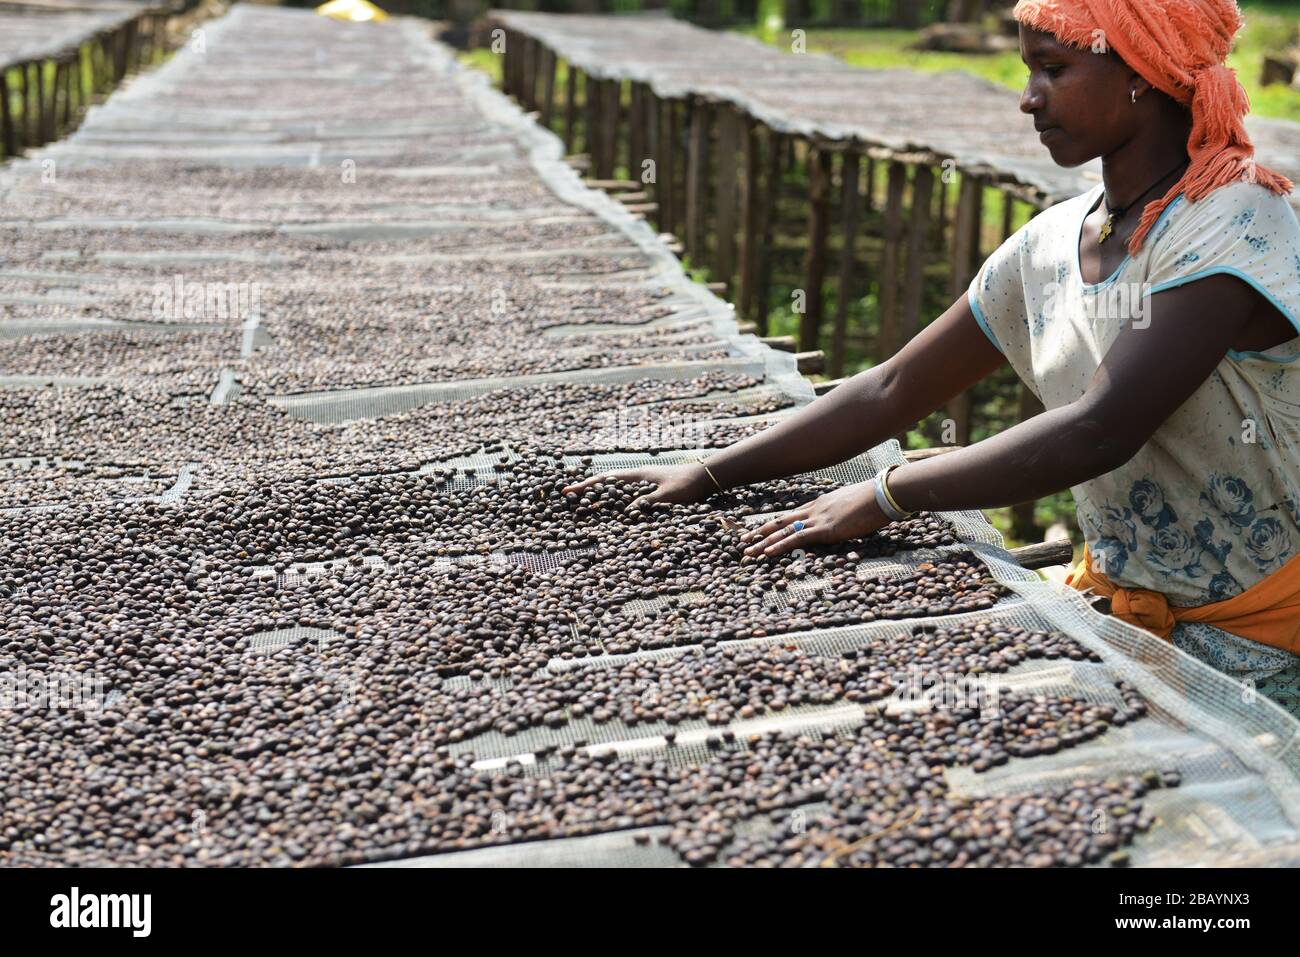 Los granos de café se clasifican y secan en camas secadoras de la finca de café Tega&Tula en el rigidón kaffa de Etiopía. Foto de stock